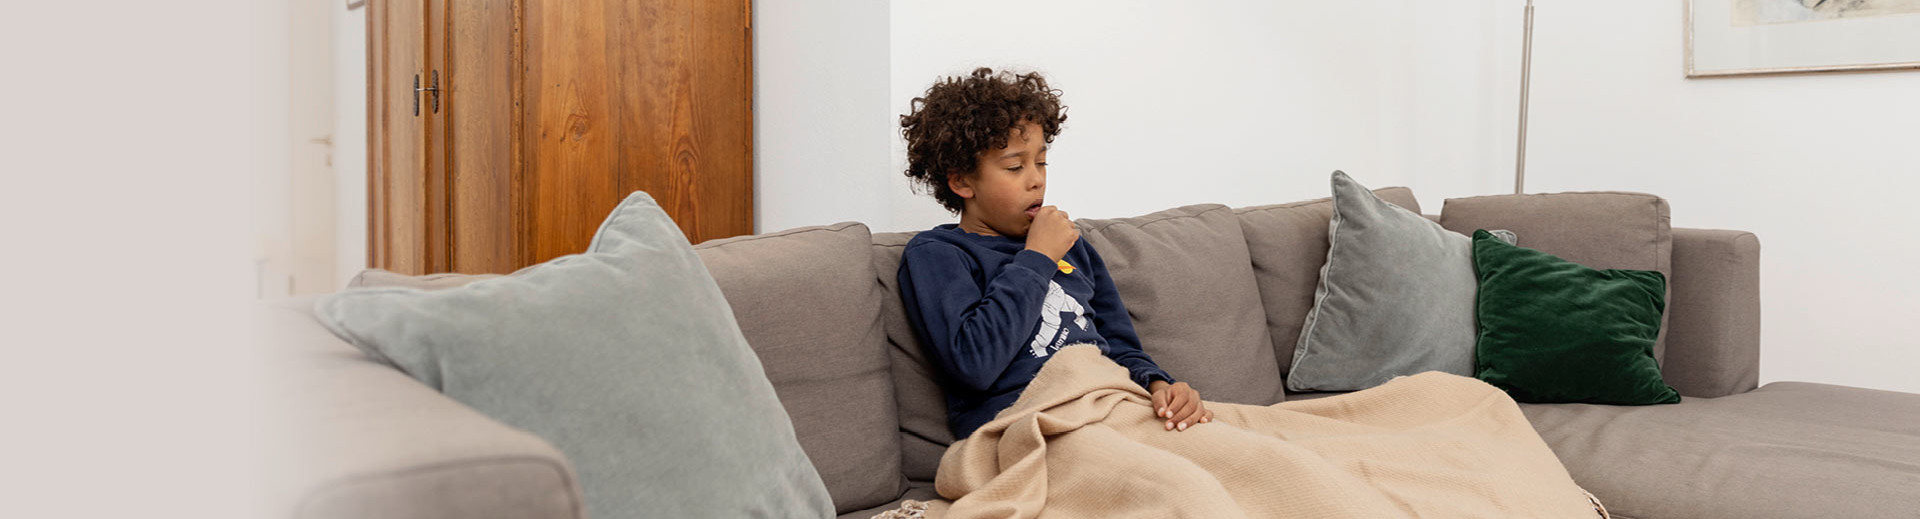 Ein kranker Junge sitzt zu Hause auf dem Sofa unter einer Decke und muss husten